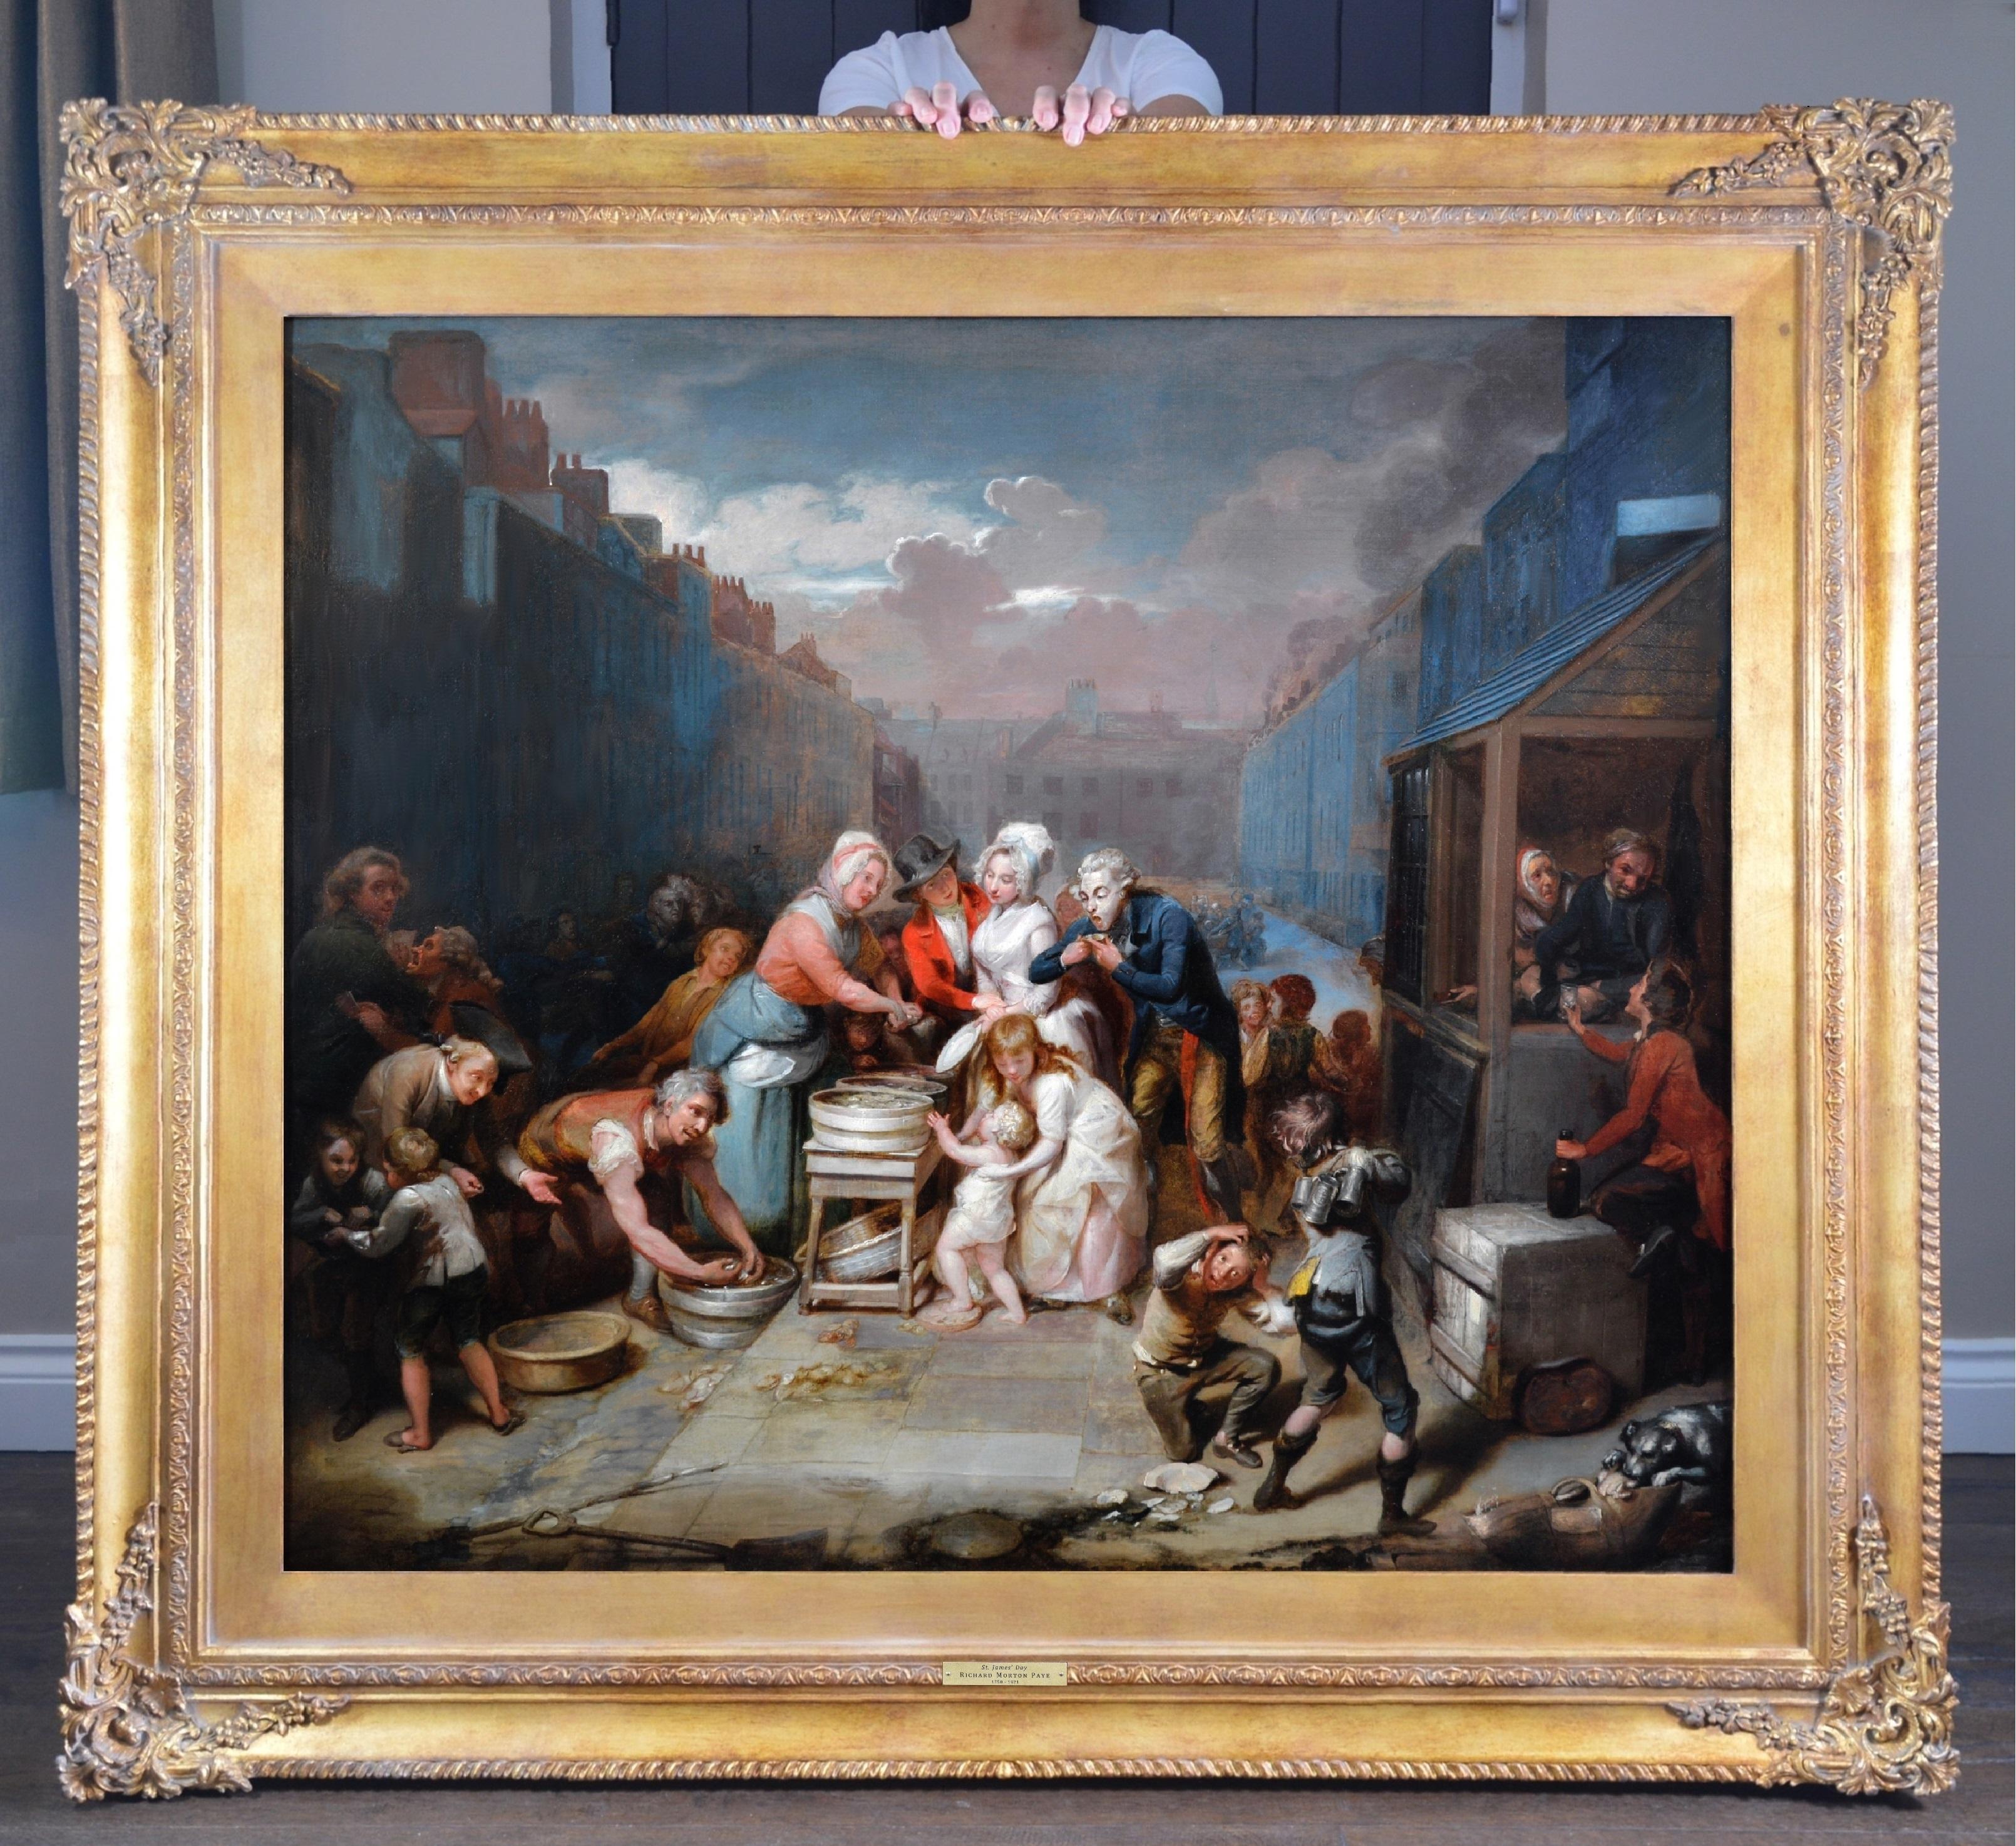 Importante pintura al óleo al viejo maestro de la Real Academia del siglo XVIII sobre el Londres georgiano